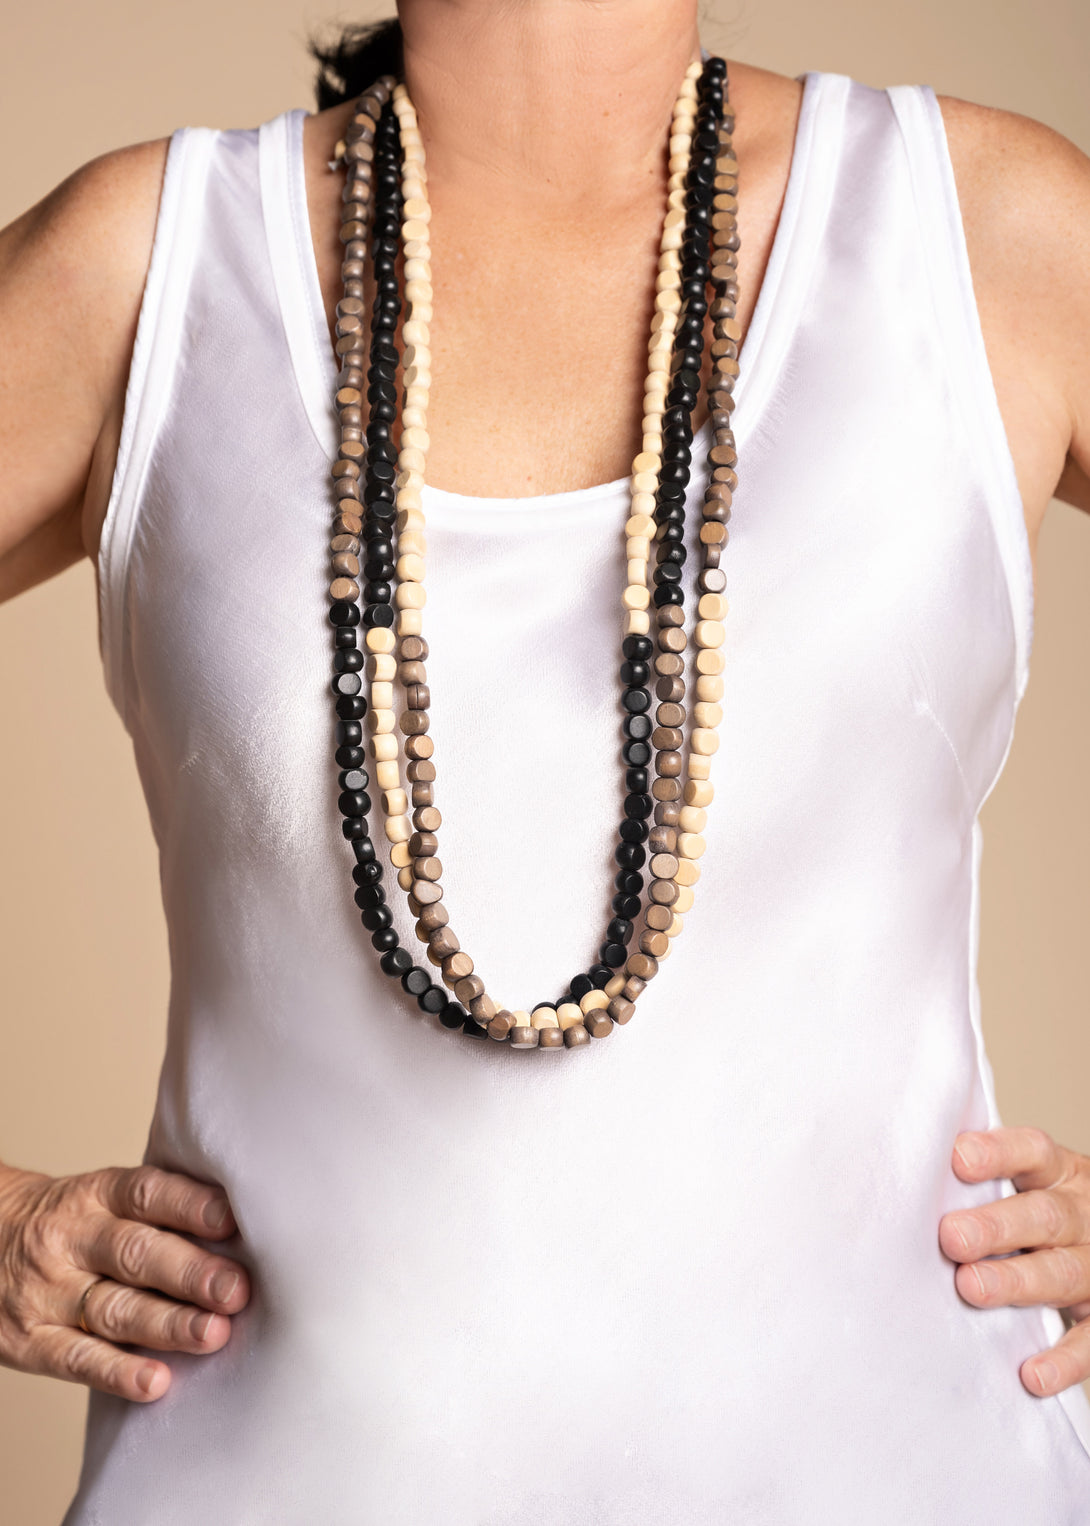 Marina Necklace in Onyx - Imagine Fashion